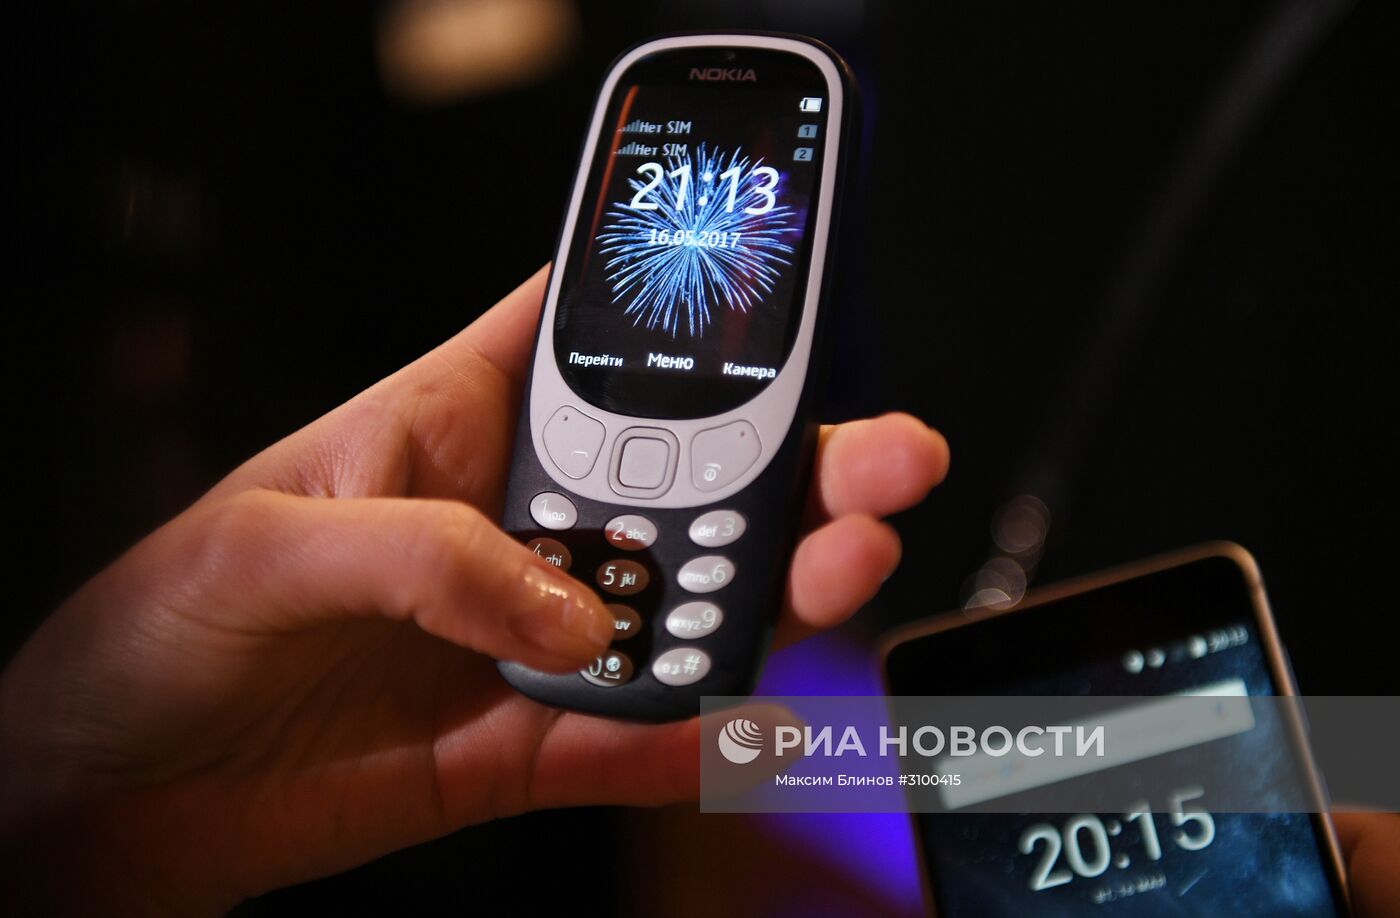 Презентация новых смартфонов Nokia и и обновленной Nokia 3310 в Москве